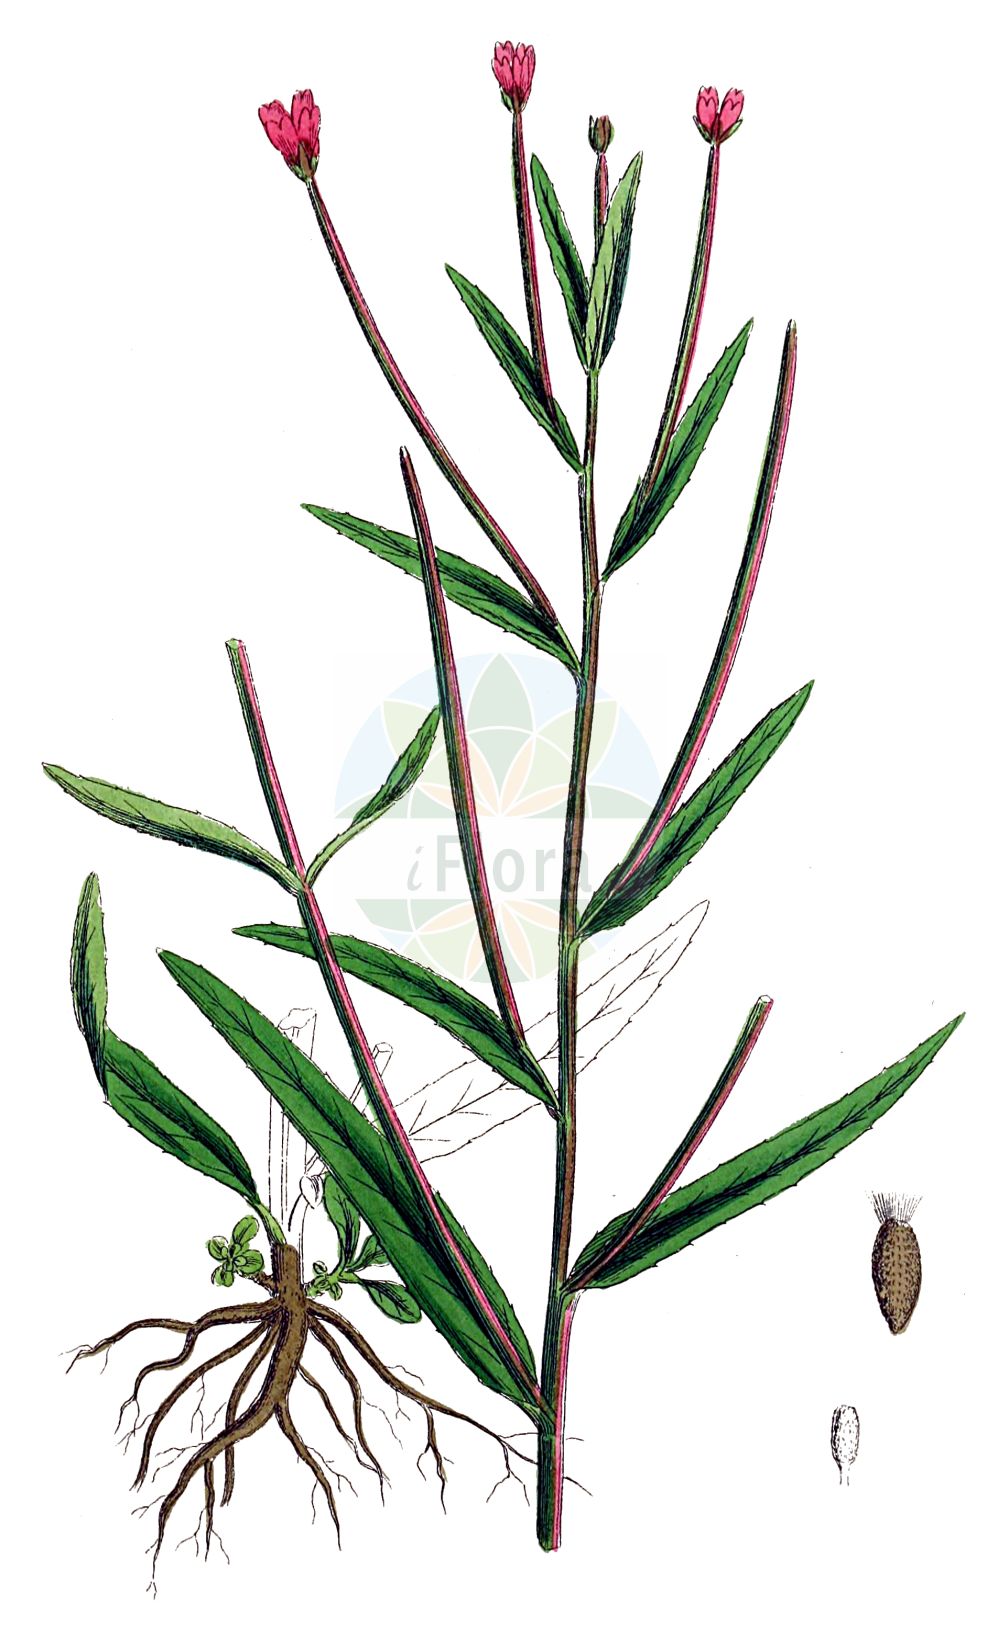 Historische Abbildung von Epilobium tetragonum (Vierkantiges Weidenröschen - Square-stalked Willowherb). Das Bild zeigt Blatt, Bluete, Frucht und Same. ---- Historical Drawing of Epilobium tetragonum (Vierkantiges Weidenröschen - Square-stalked Willowherb). The image is showing leaf, flower, fruit and seed.(Epilobium tetragonum,Vierkantiges Weidenröschen,Square-stalked Willowherb,Epilobium adnatum,Epilobium tetragonum,Epilobium tetragonum subsp. adnatum,Vierkantiges Weidenroeschen,Eigentliches Vierkant-Weidenroeschen,Graugruenes Vierkant-Weidenroeschen,Lamys Weidenroeschen,Vierkant-Weidenroeschen,Square-stalked Willowherb,Square-stemmed Willowherb,Indonesian Gum,Epilobium,Weidenröschen,Willowherb,Onagraceae,Nachtkerzengewächse,Evening Primrose family,Blatt,Bluete,Frucht,Same,leaf,flower,fruit,seed,Sowerby (1790-1813))